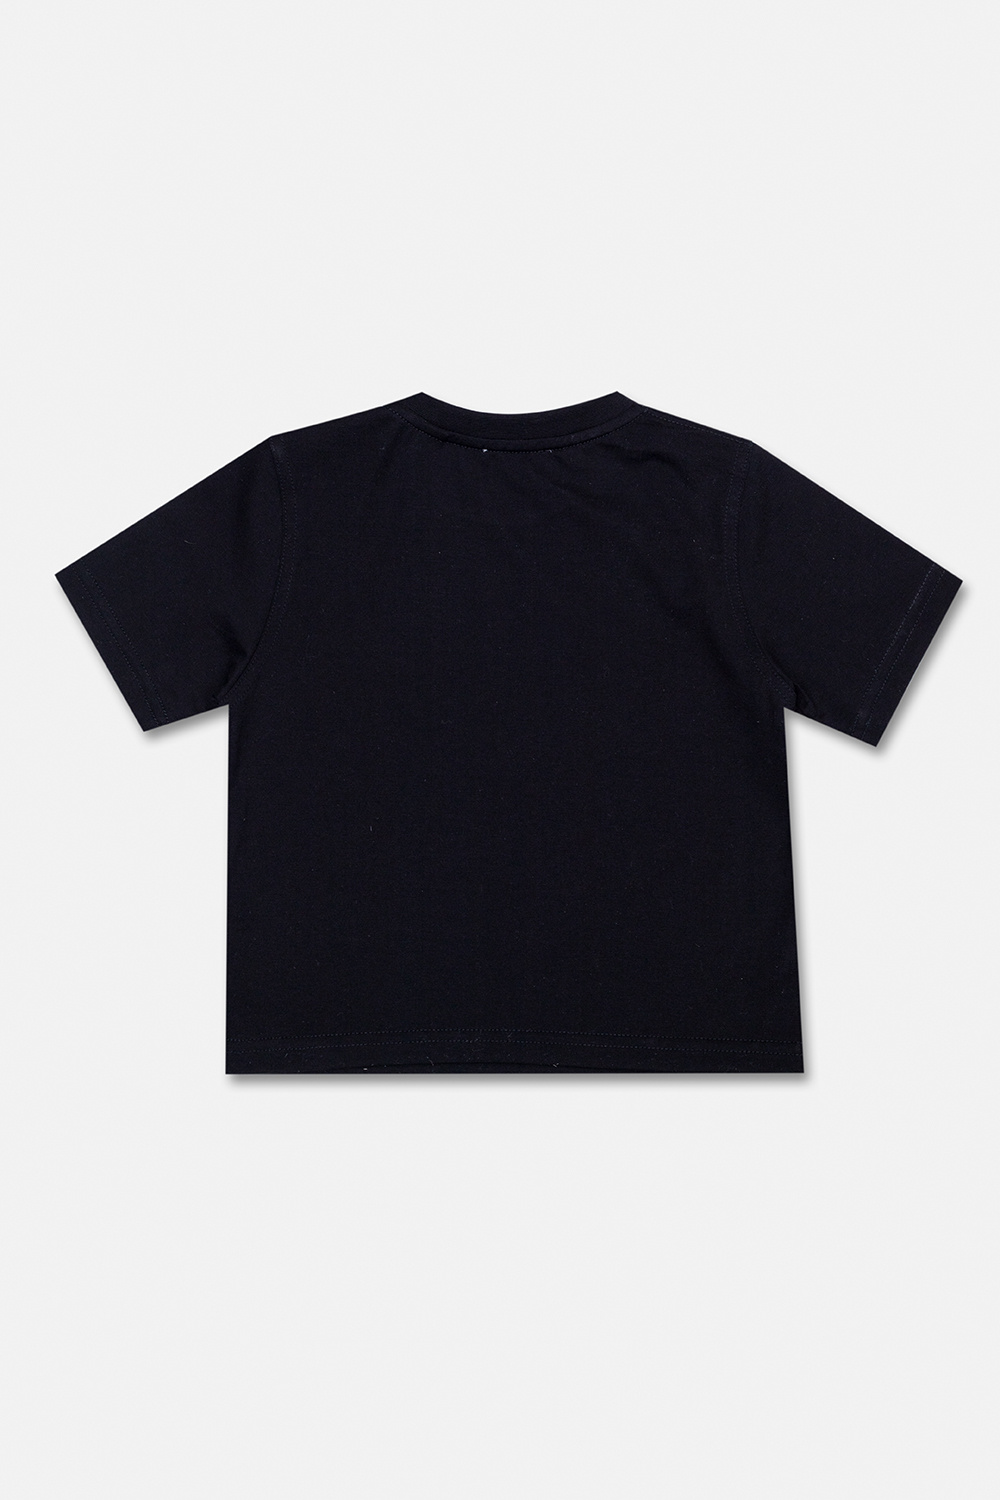 Burberry Kids ‘Cedar’ T-shirt